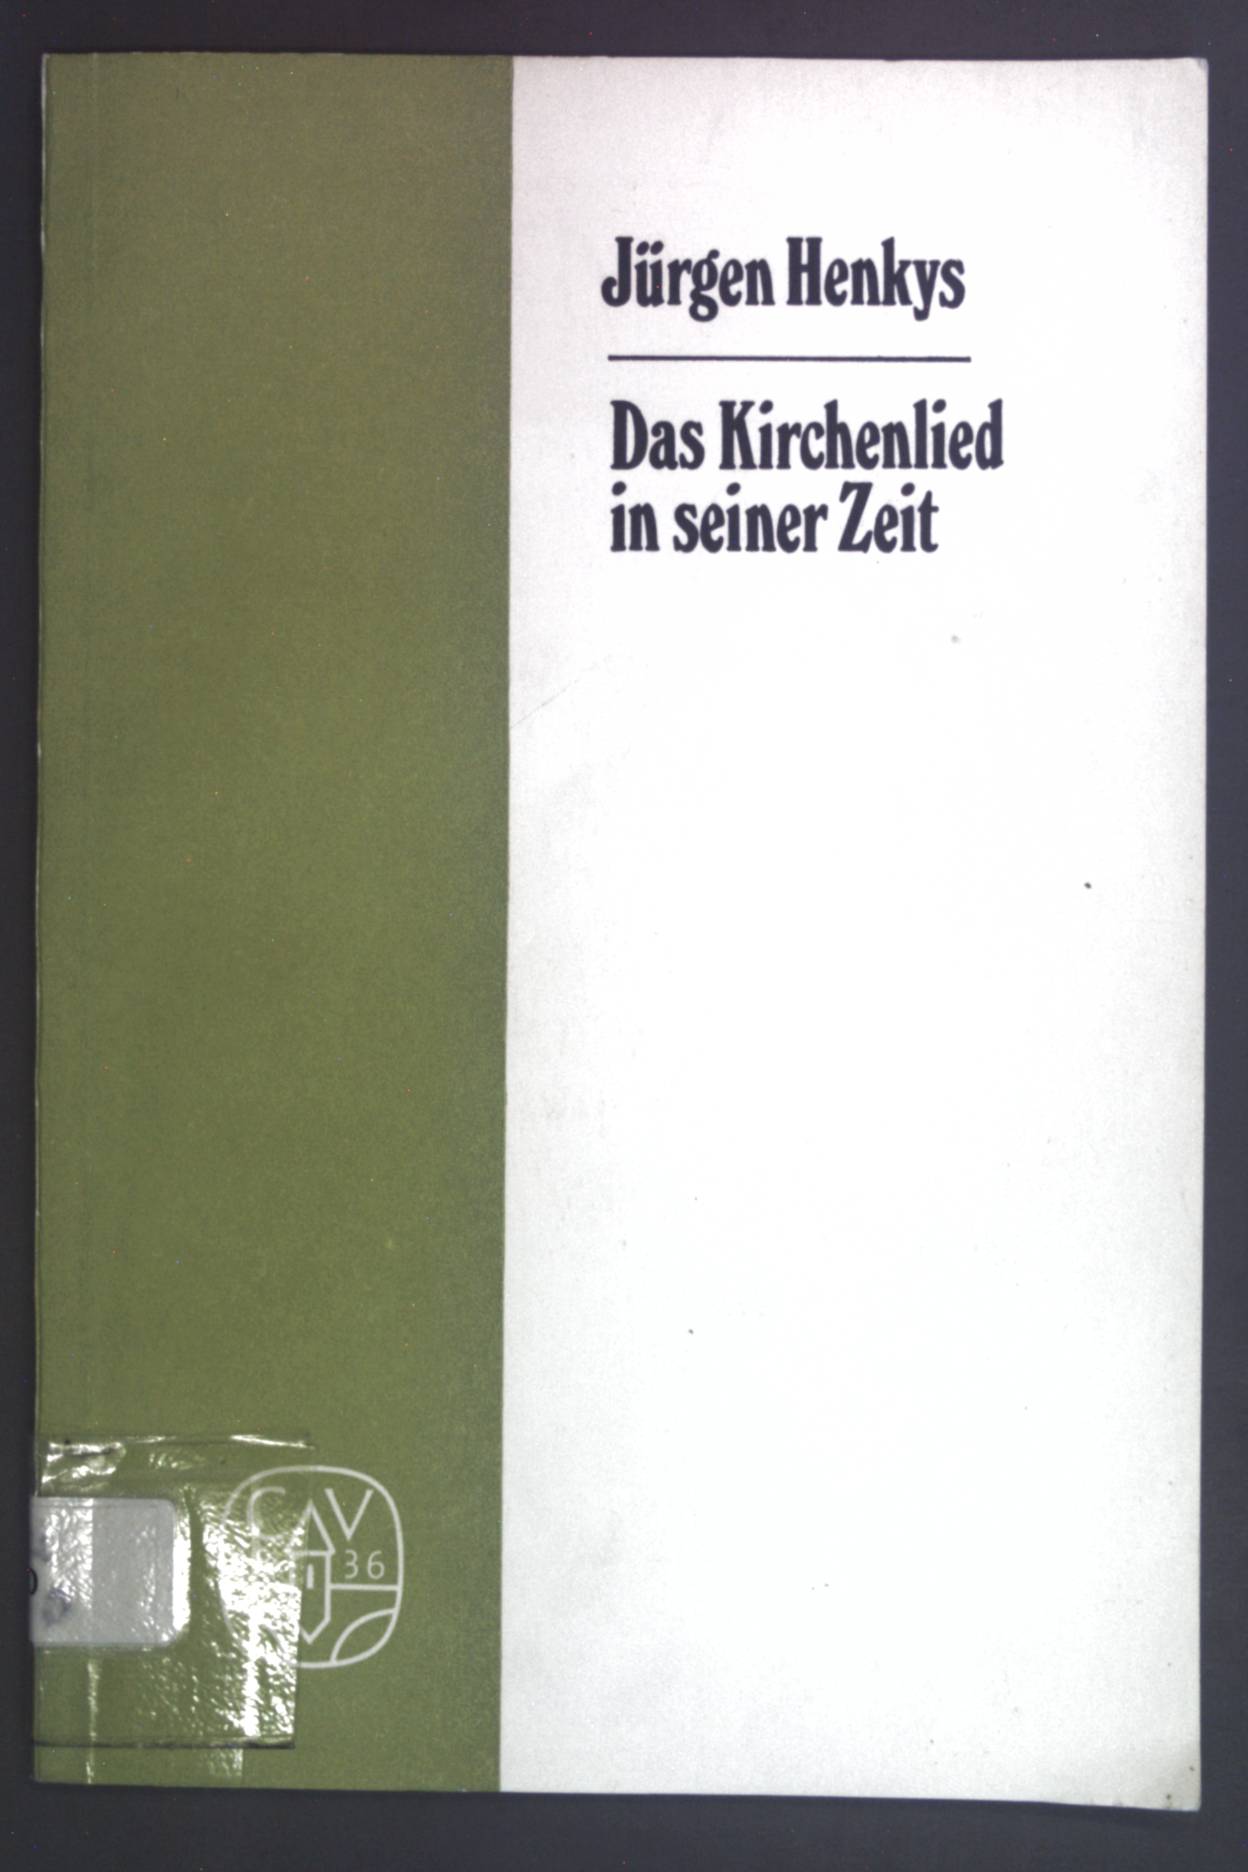 Das Kirchenlied in seiner Zeit: Hymnologische Beitrage (Arbeiten zur Theologie ; 64) (German Edition)